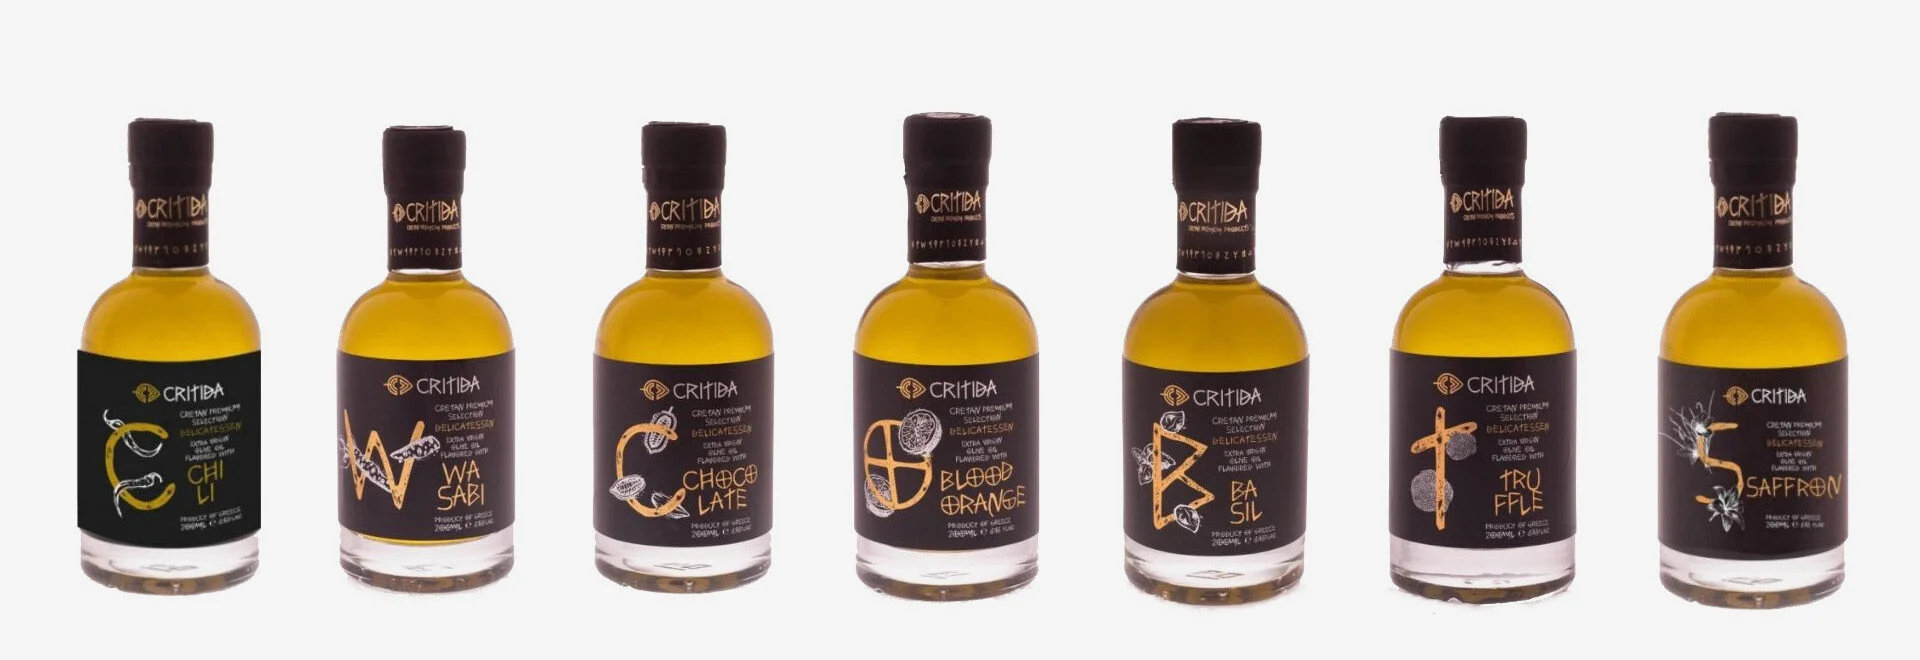 我們來自希臘克里特島的風味特級初榨橄欖油 (EVOO) 優質產品